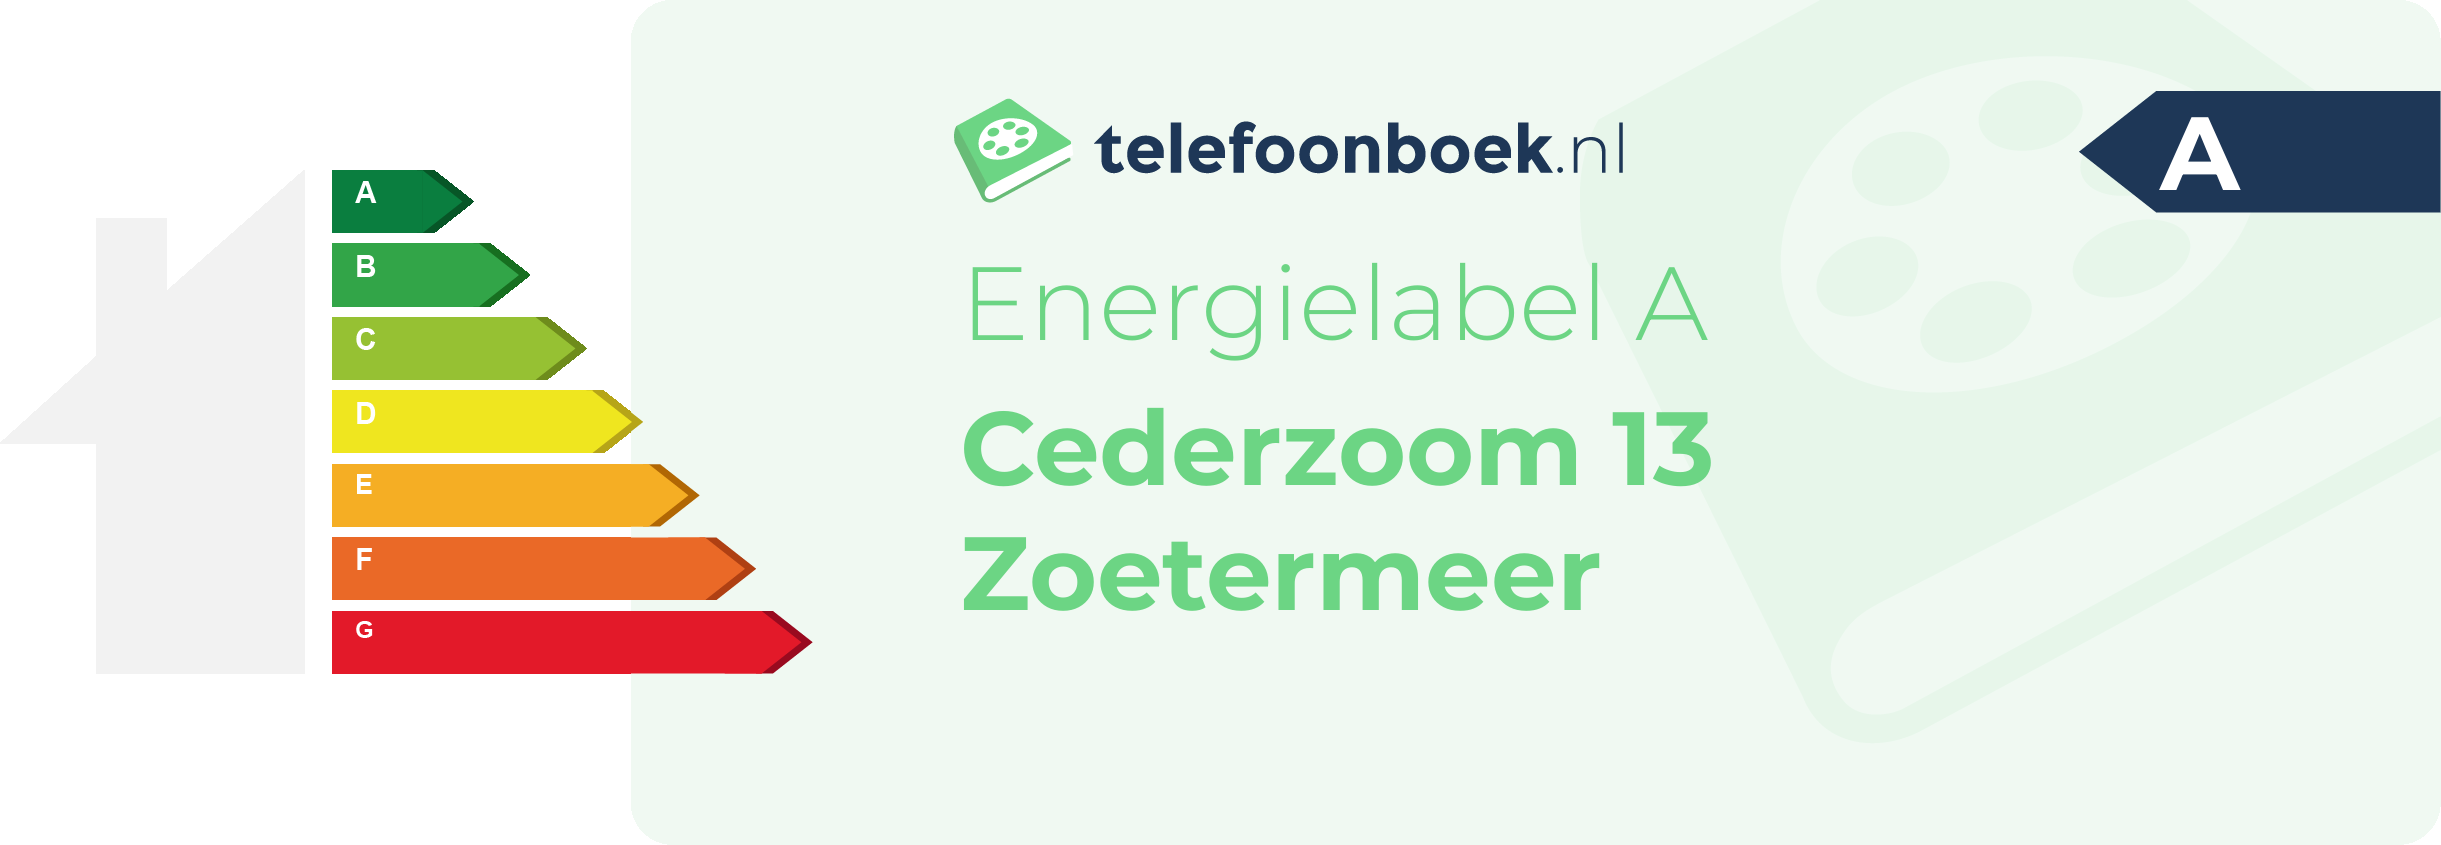 Energielabel Cederzoom 13 Zoetermeer